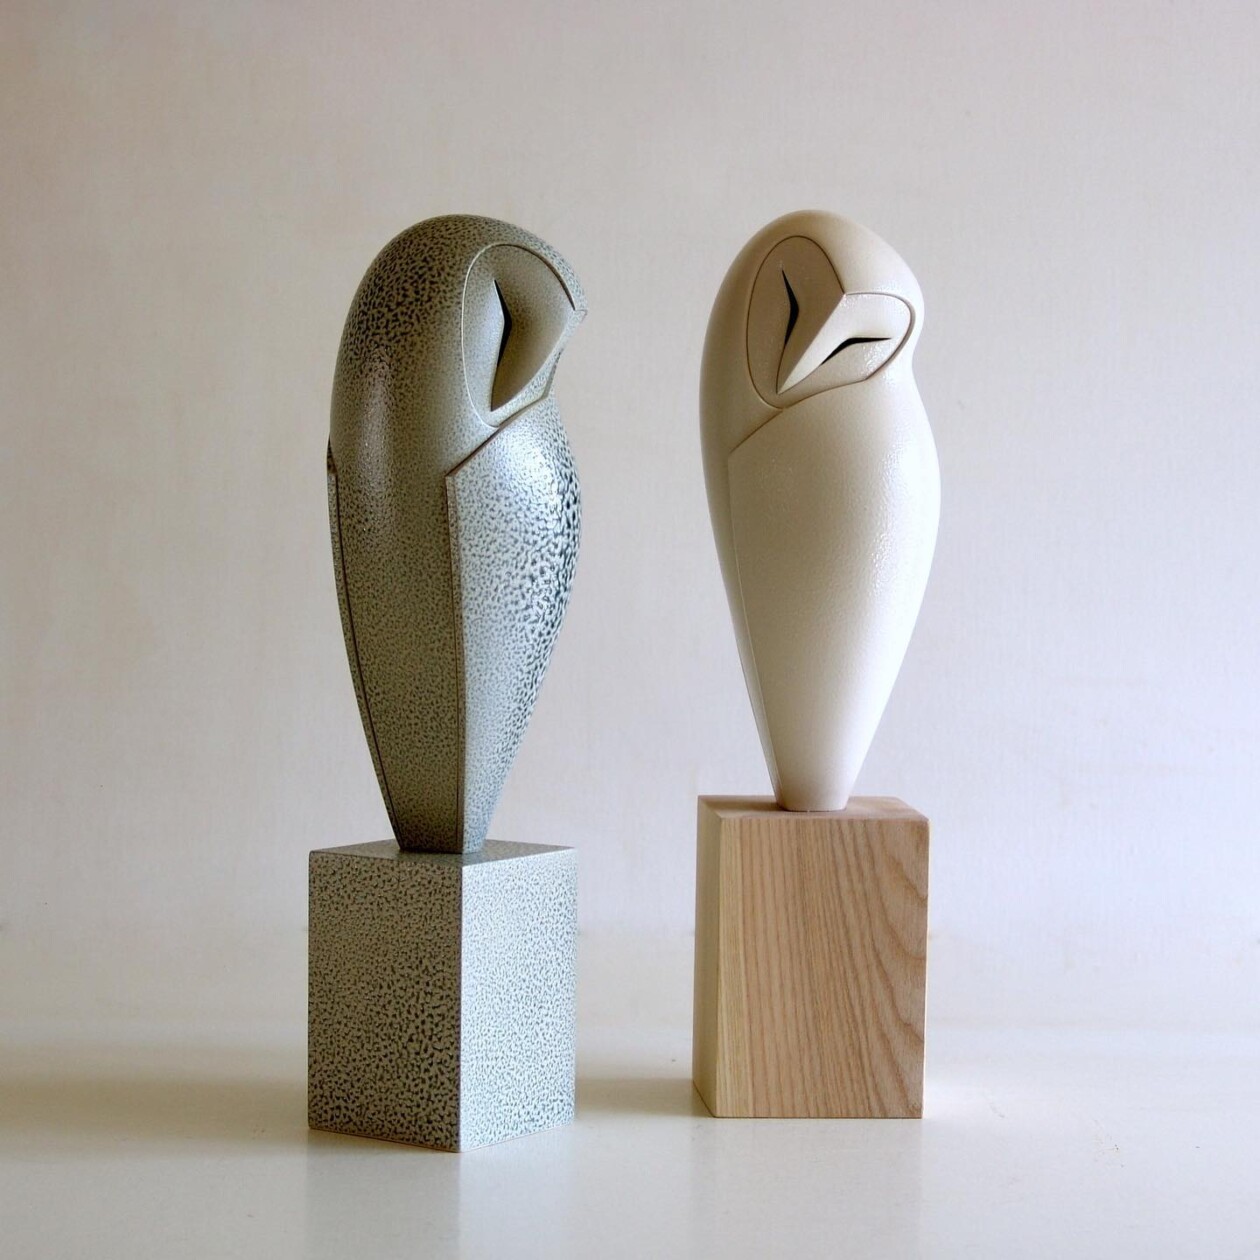 Avian Spirit, Elegant Bird Sculptures By Anthony Theakston (1)